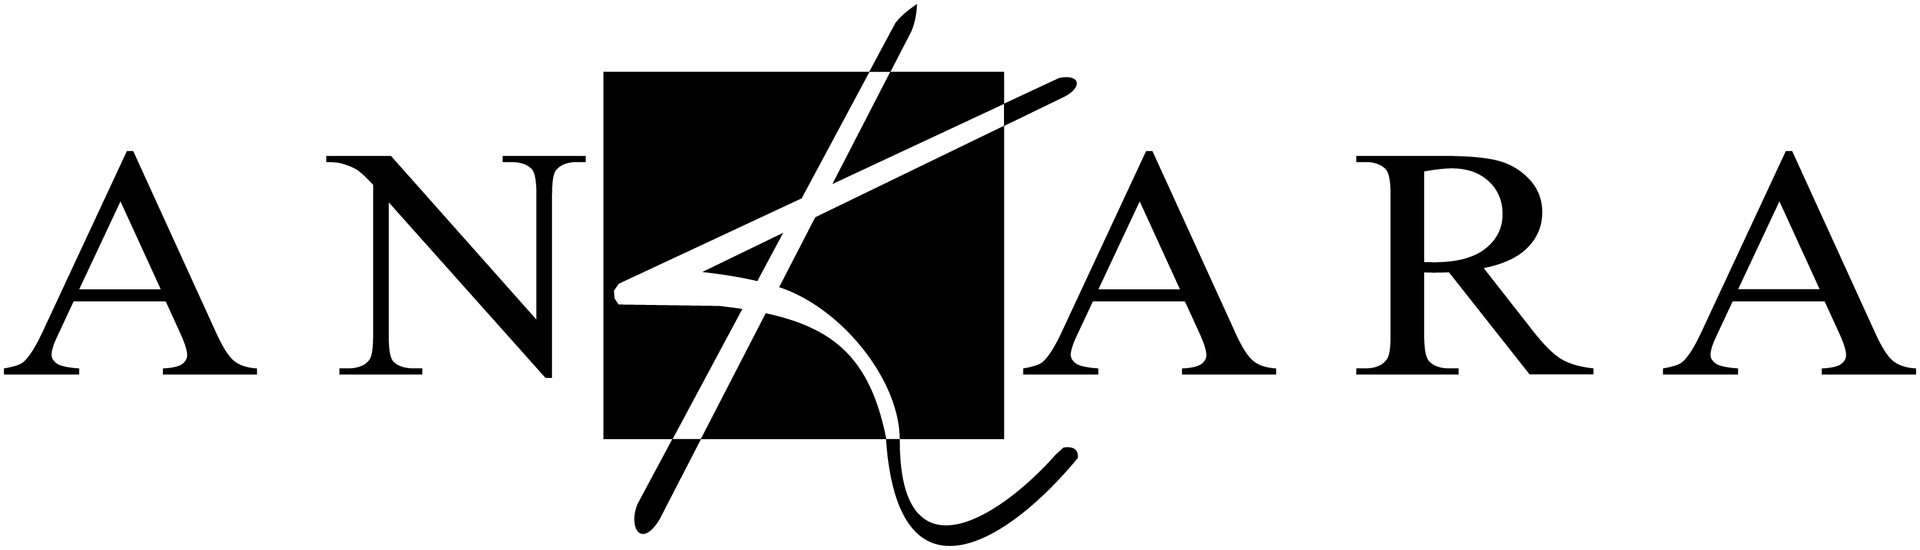 ANKARA logo de catálogo